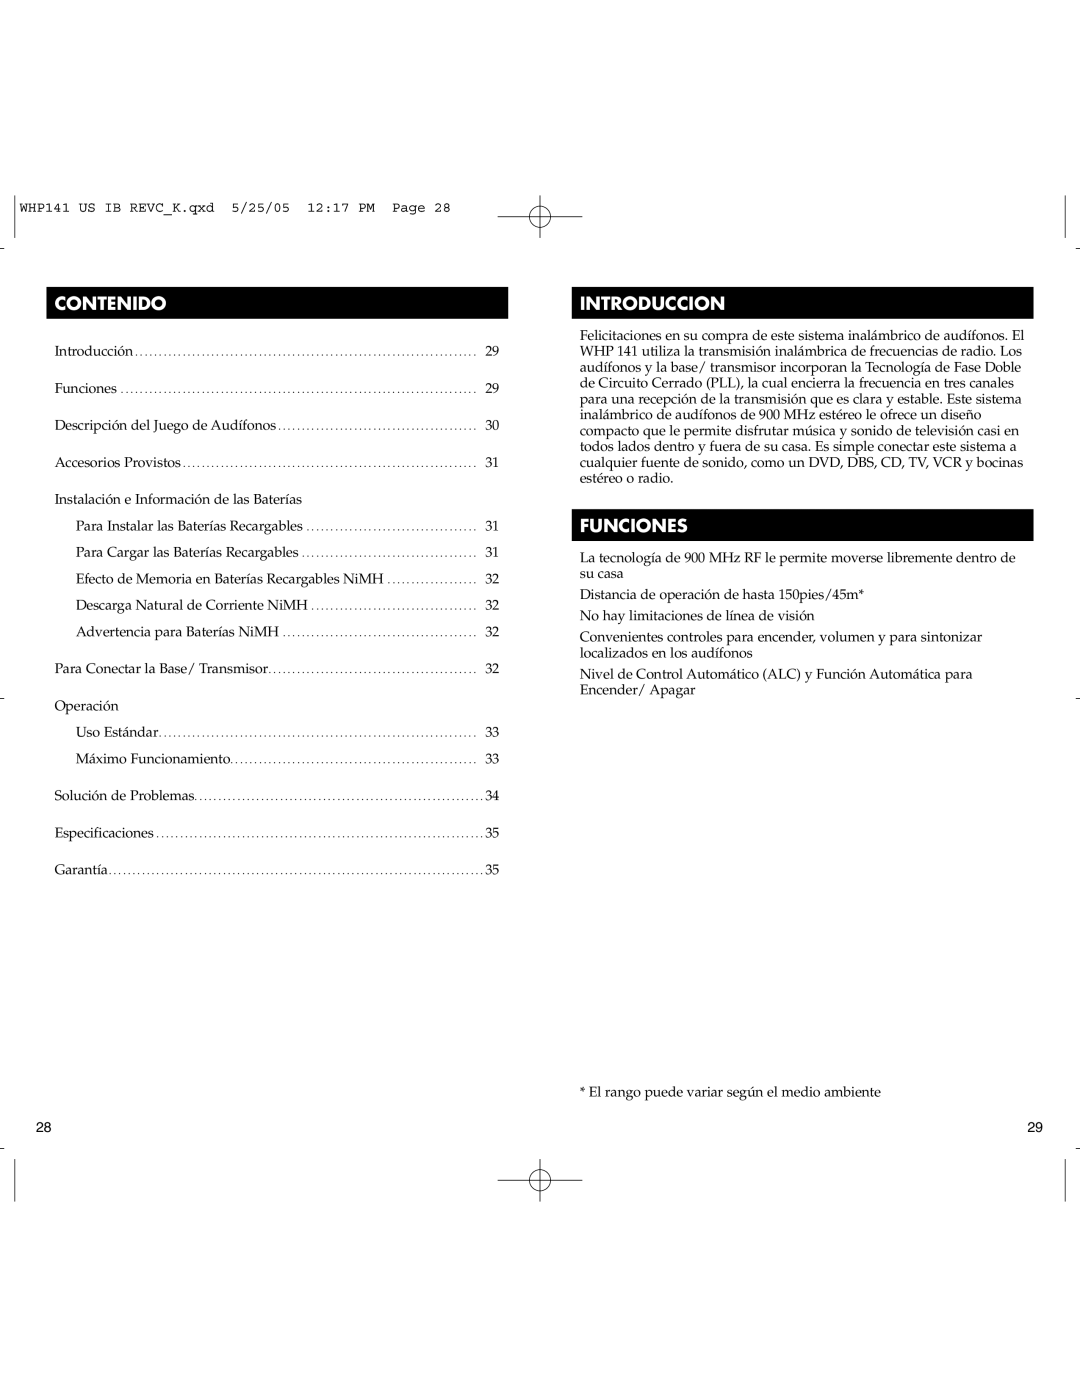 RCA WHP141 manual Contenido, Introduccion, Funciones 